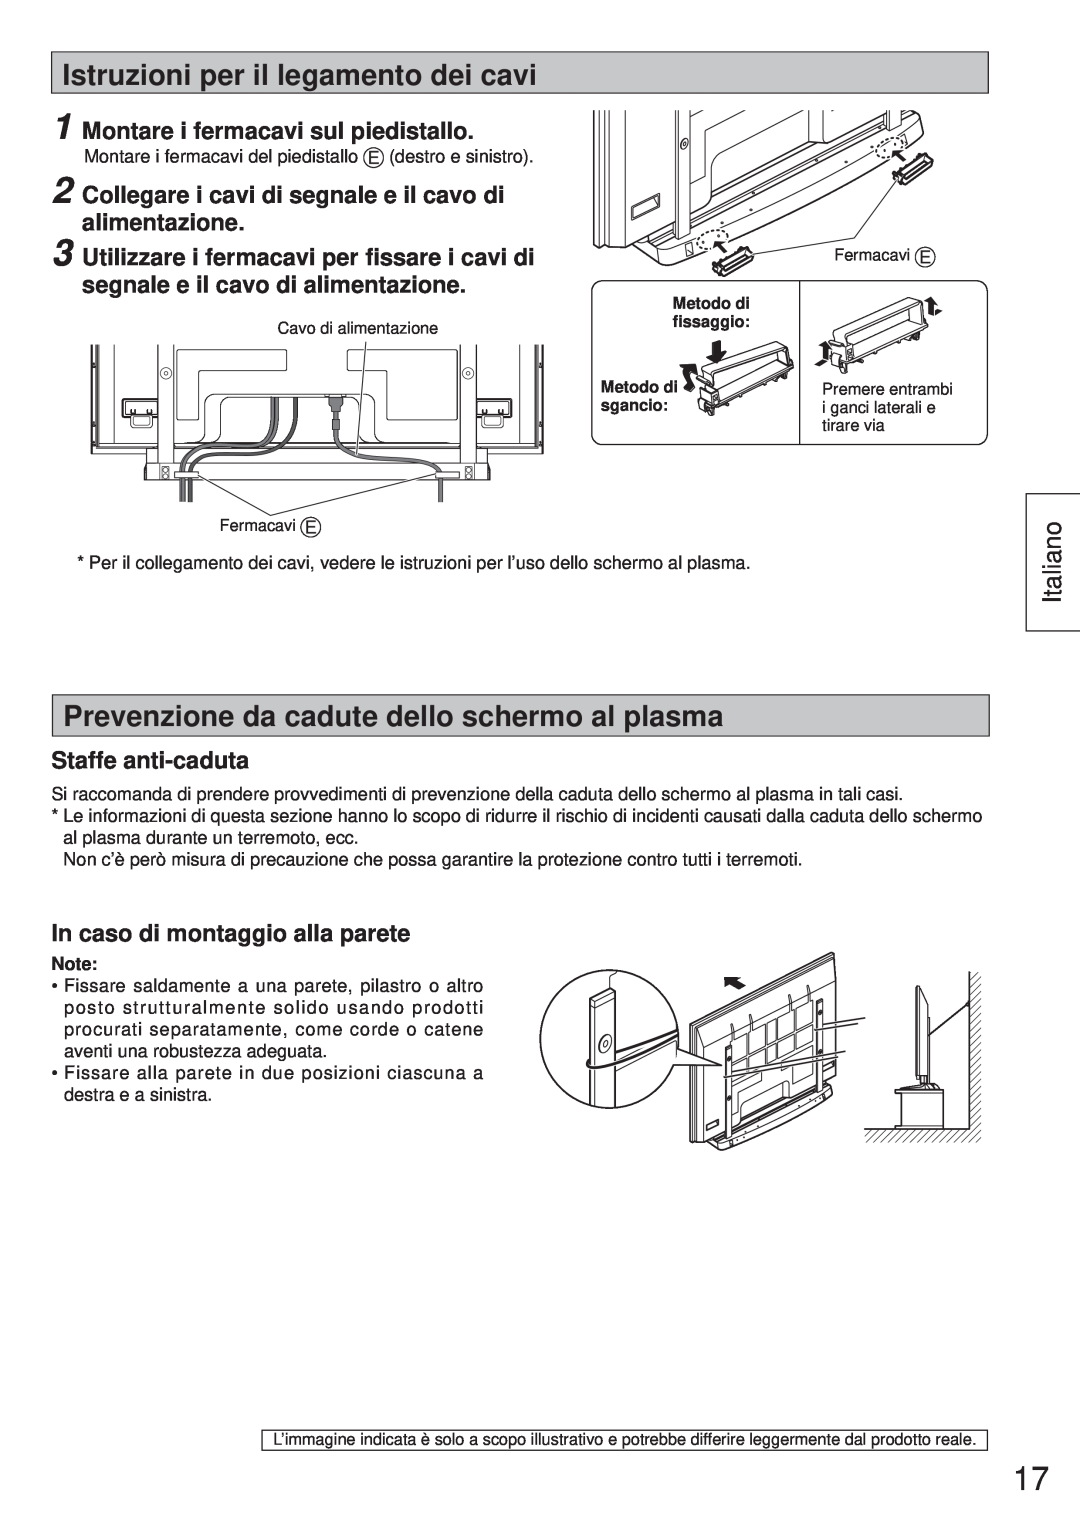 Panasonic TY-ST65VX100 Istruzioni per il legamento dei cavi, Prevenzione da cadute dello schermo al plasma, Italiano 